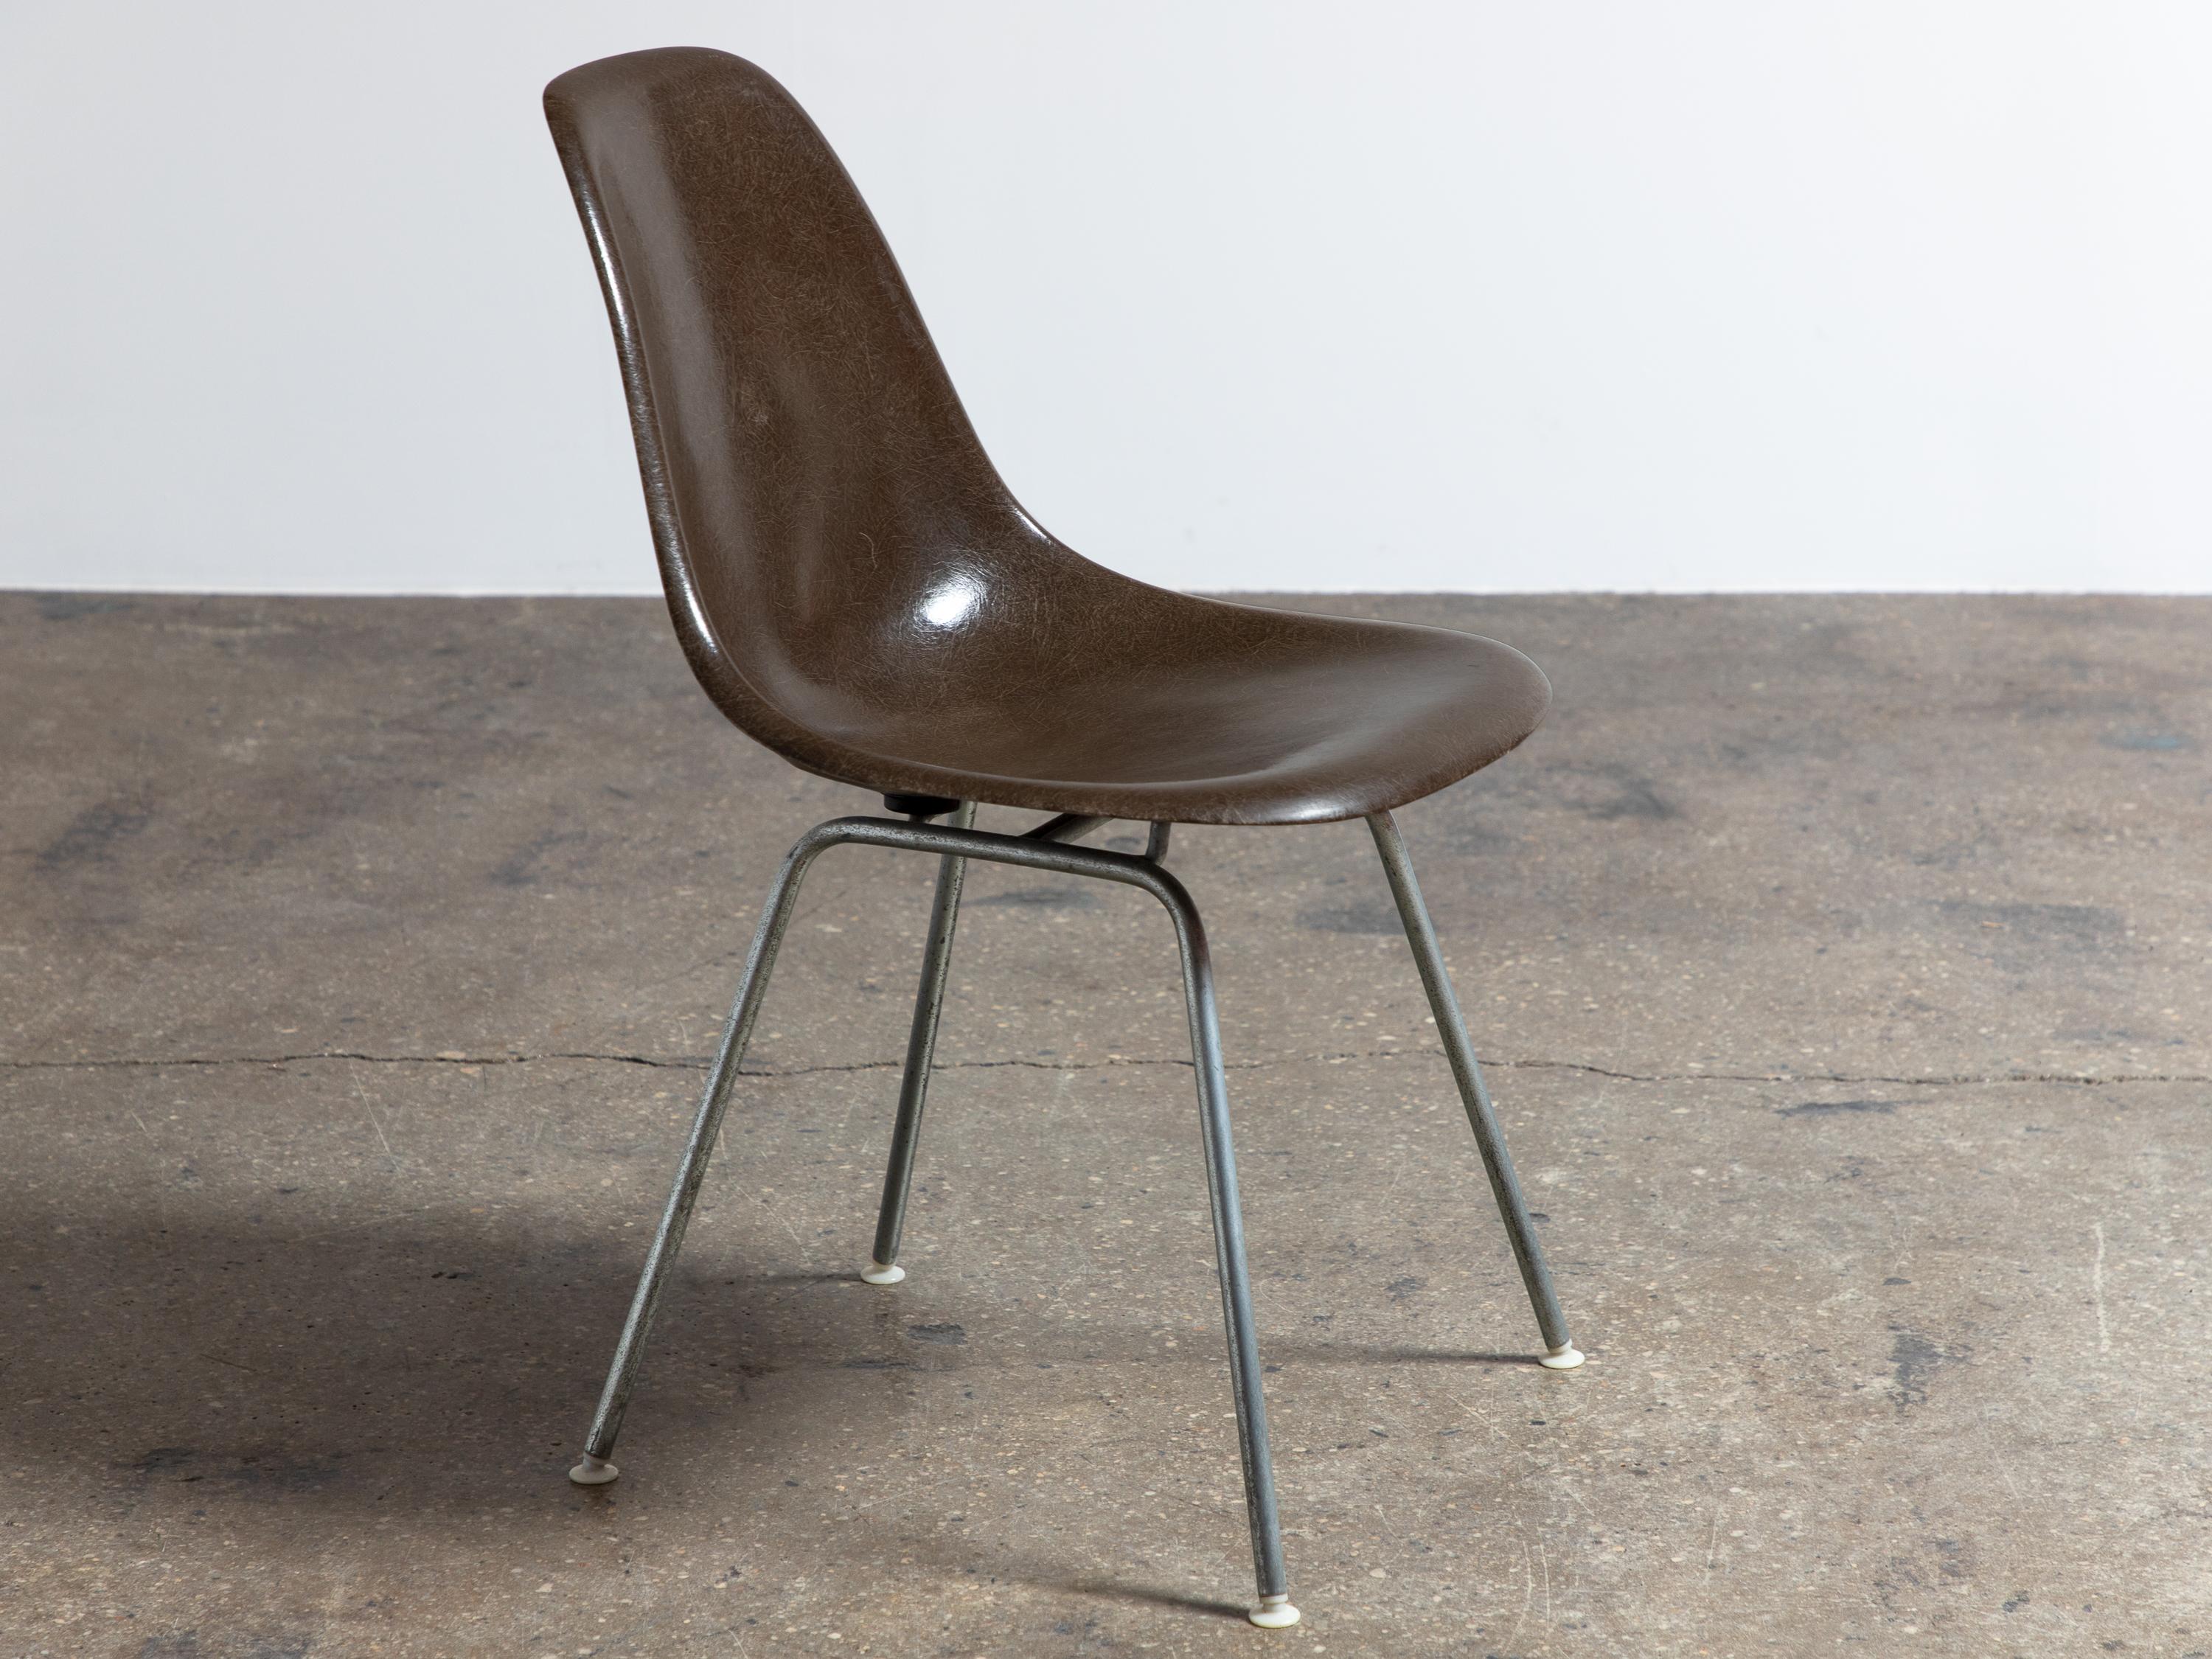 Nous avons onze chaises Eames originales des années 1960 en fibre de verre avec des bases en H d'origine. Montage étroit. Belle couleur brune riche. Ils ont leur finition d'origine et sont magnifiques, étincelants et super filants. Toutes les